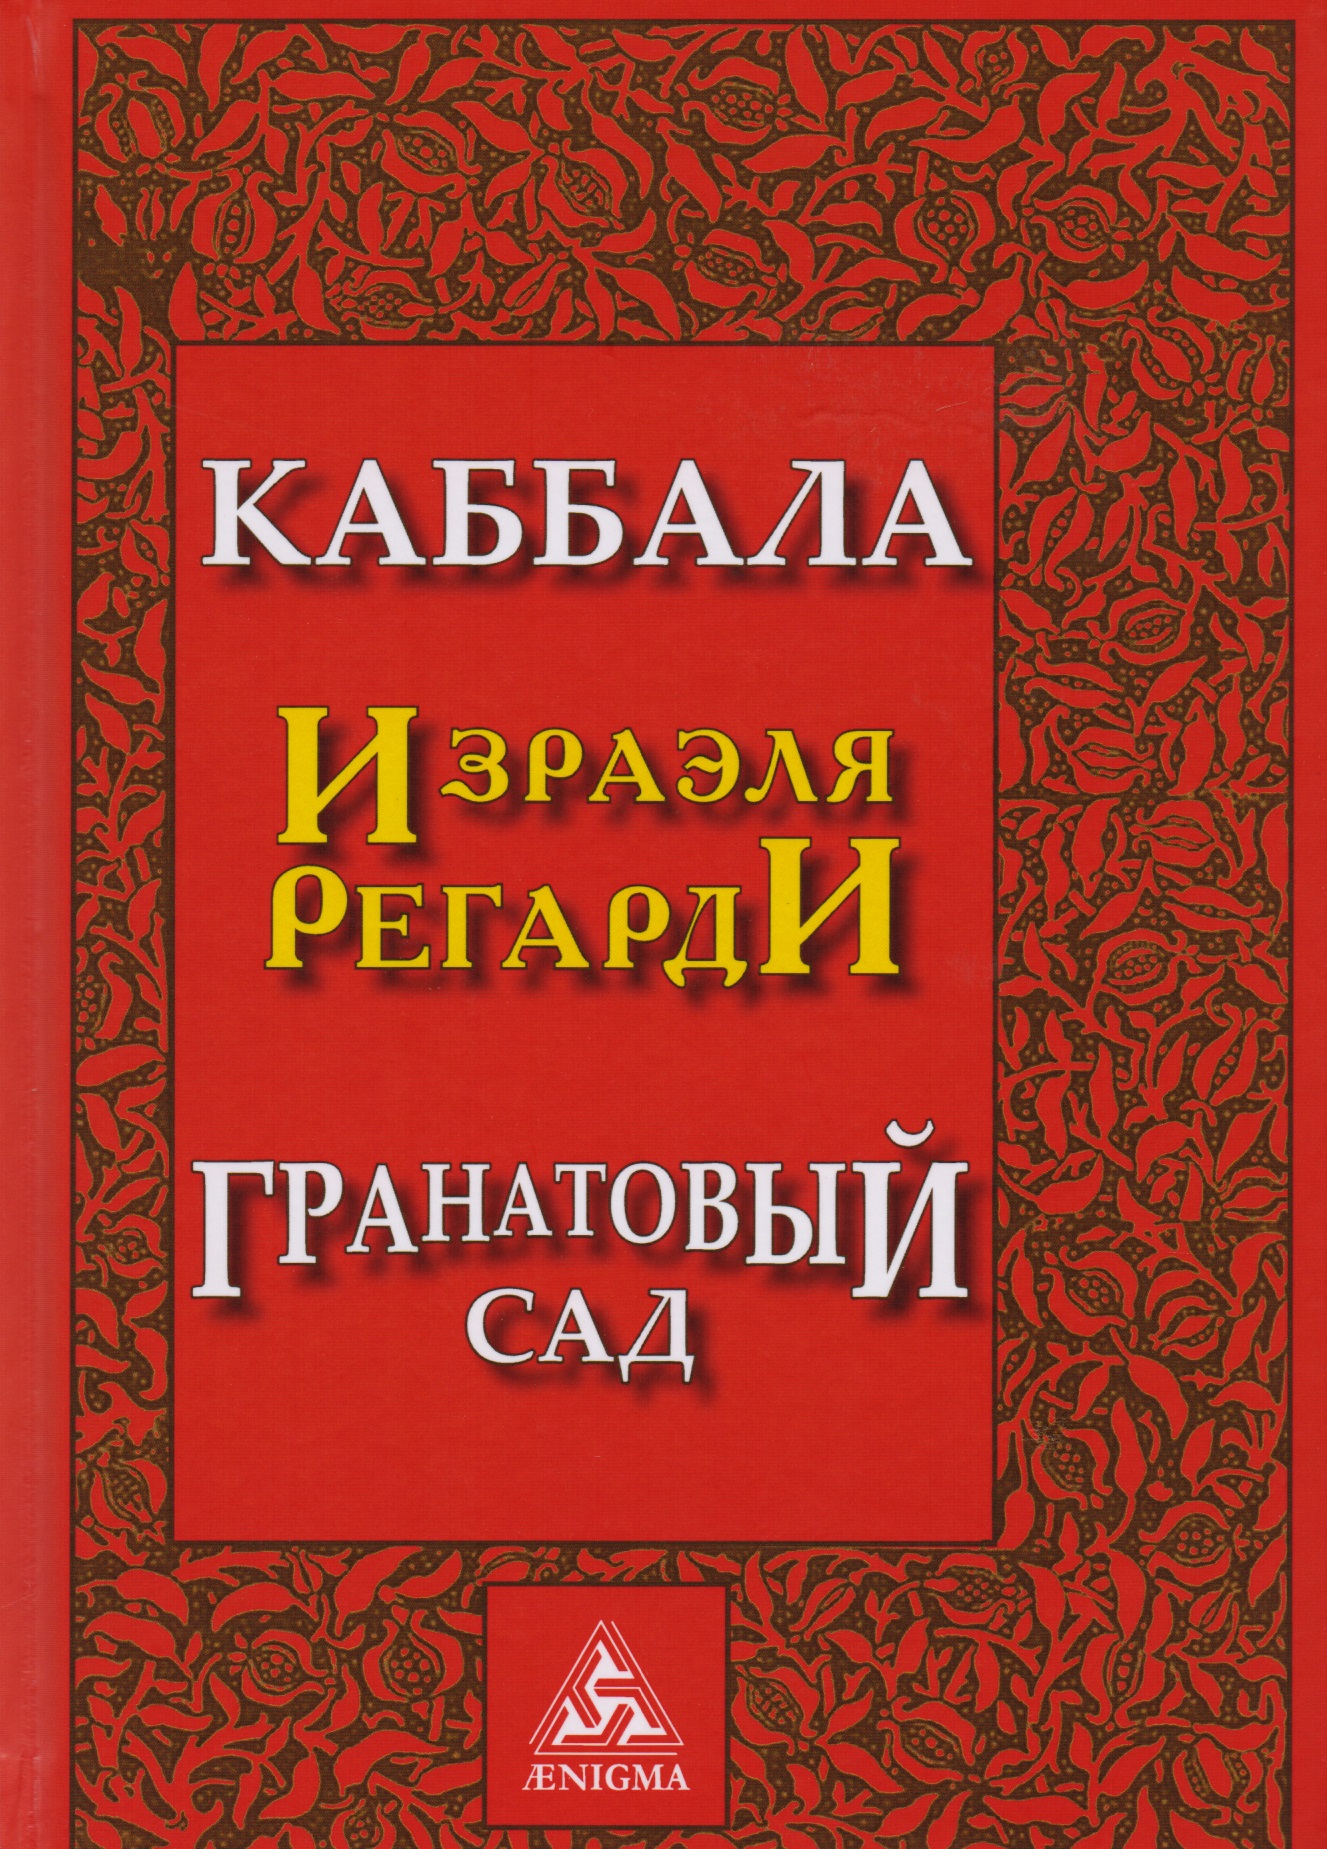 Каббала Гранатовый сад (2 изд) Регарди регарди и срединный столп баланс магии и науки